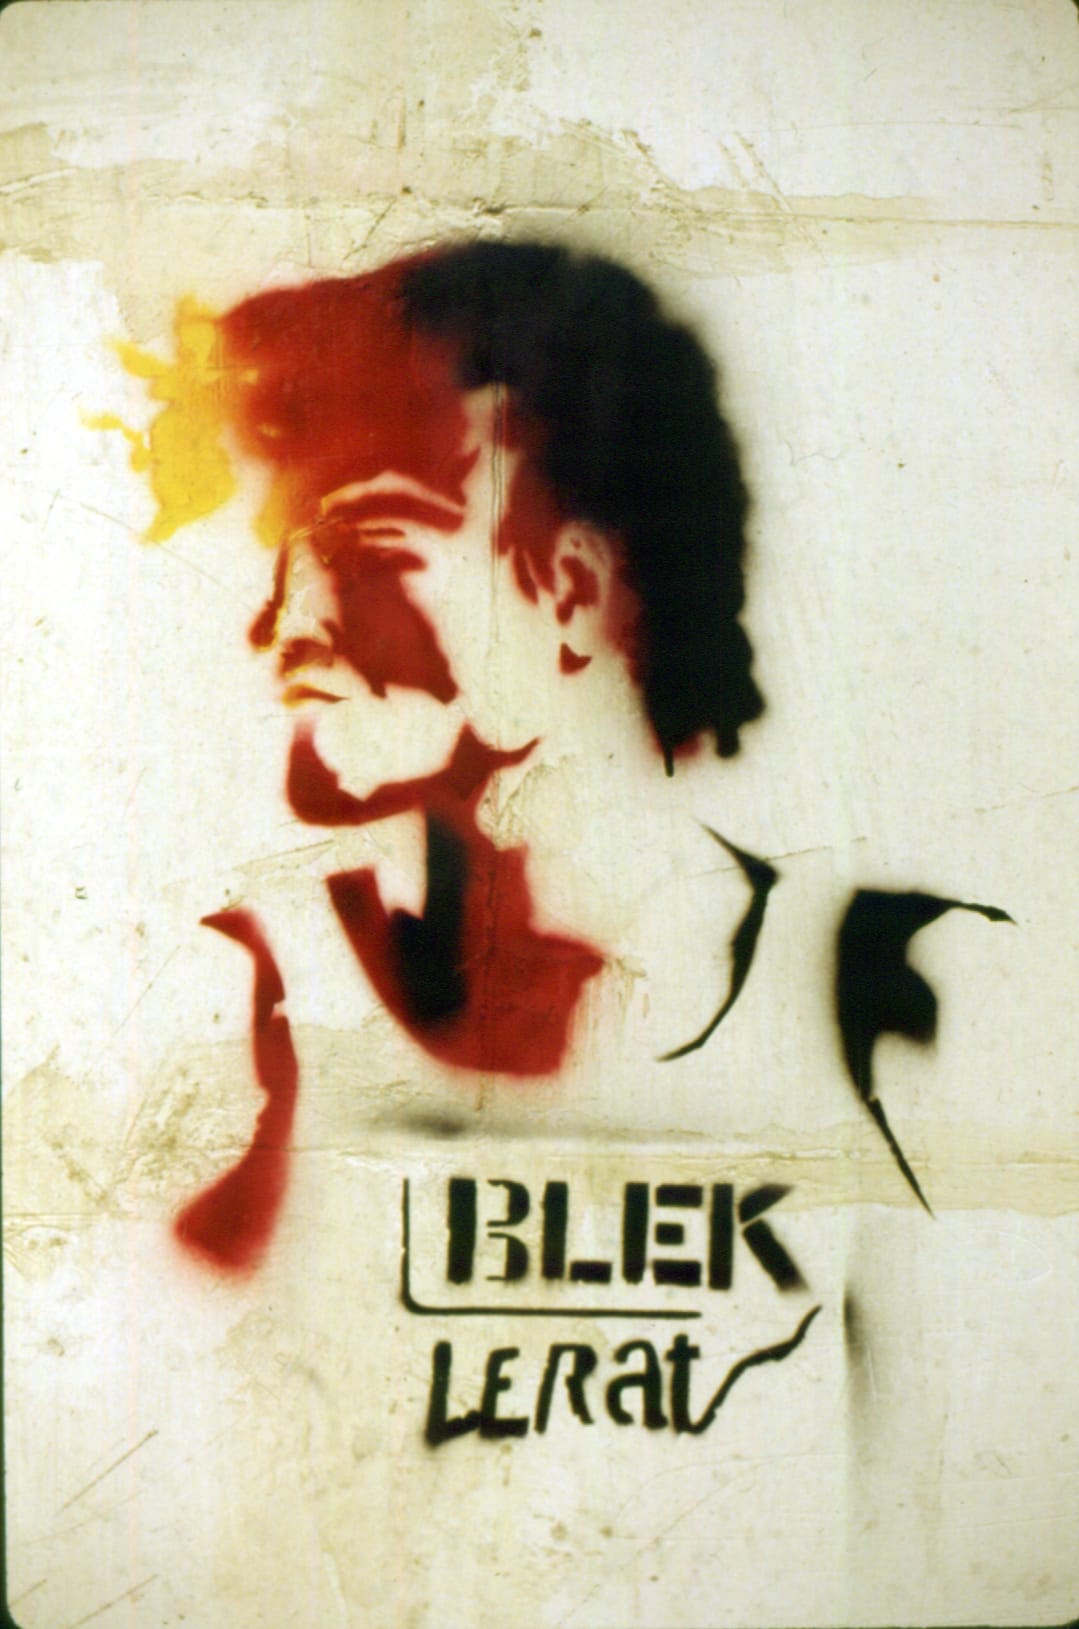 Portrait de Blek Le Rat avec sa signature au pochoir sur un mur